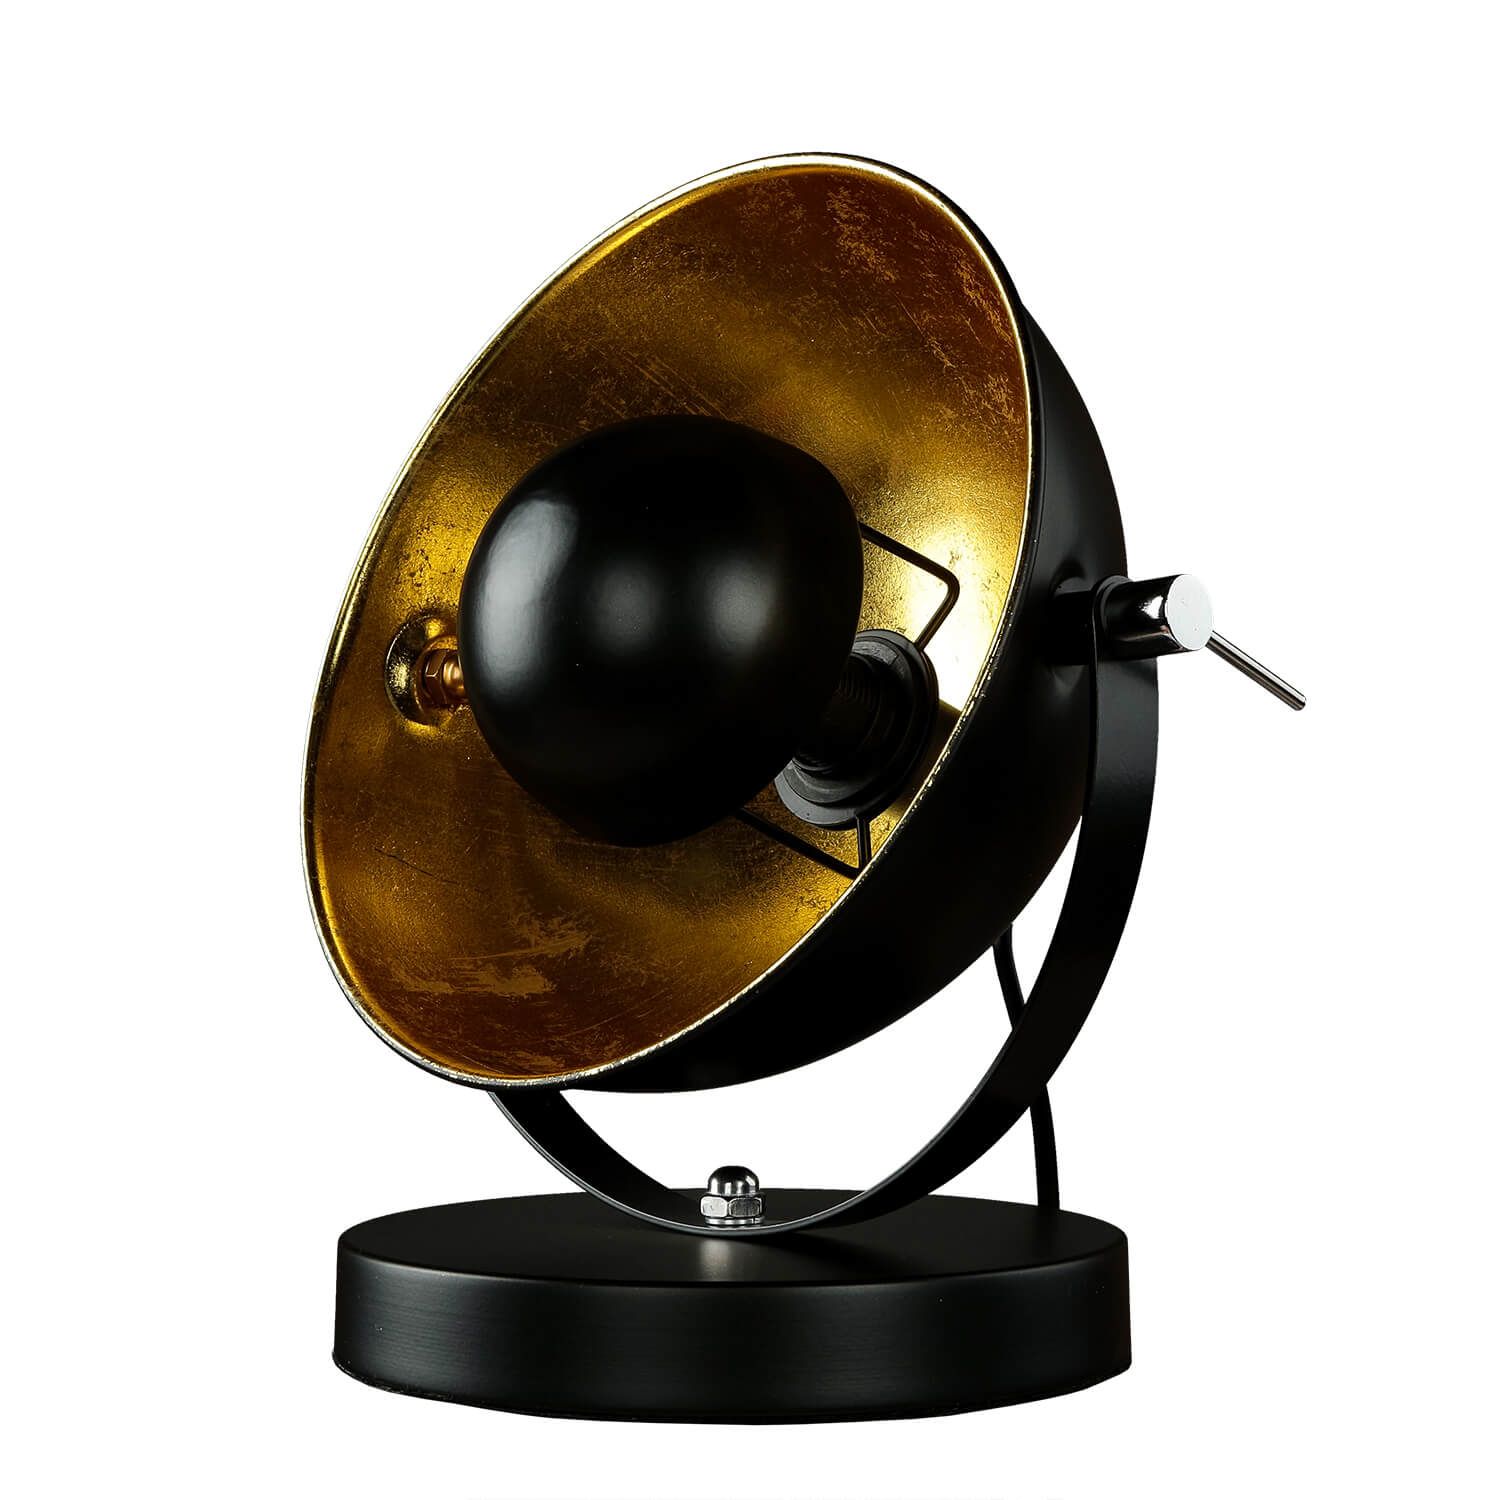 Tischlampe rund Retro Design verstellbar Schwarz Gold